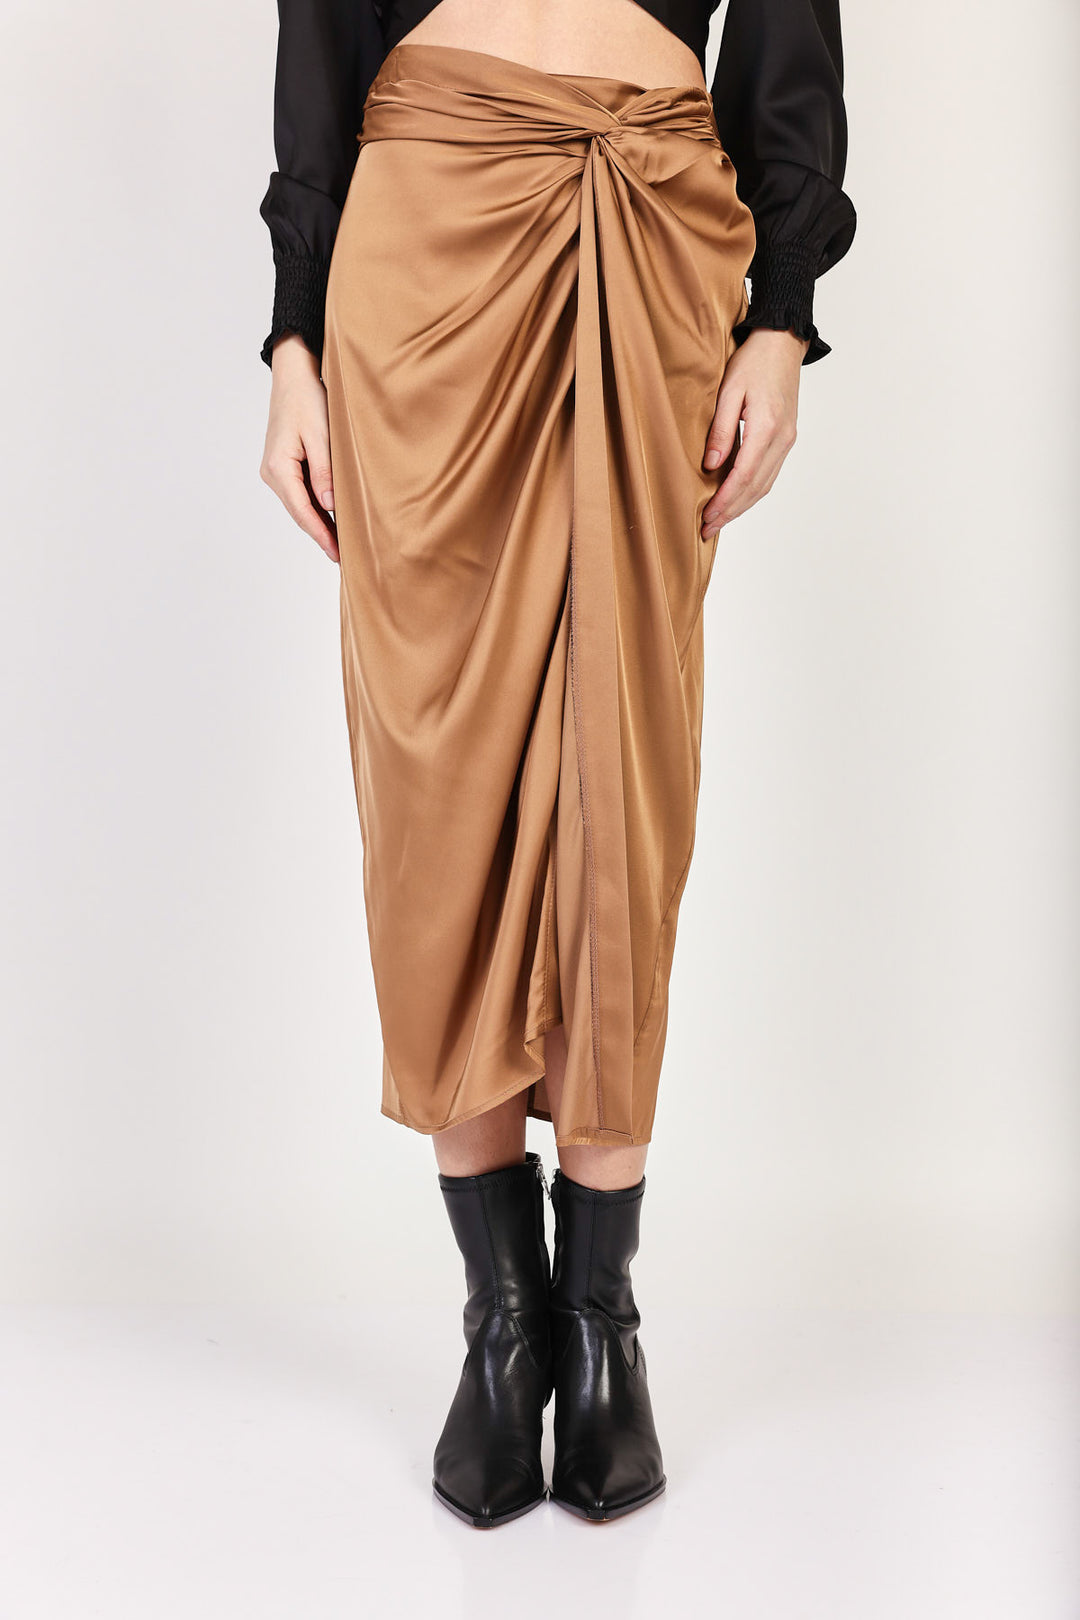 חצאית מידי Moro בצבע קאמל